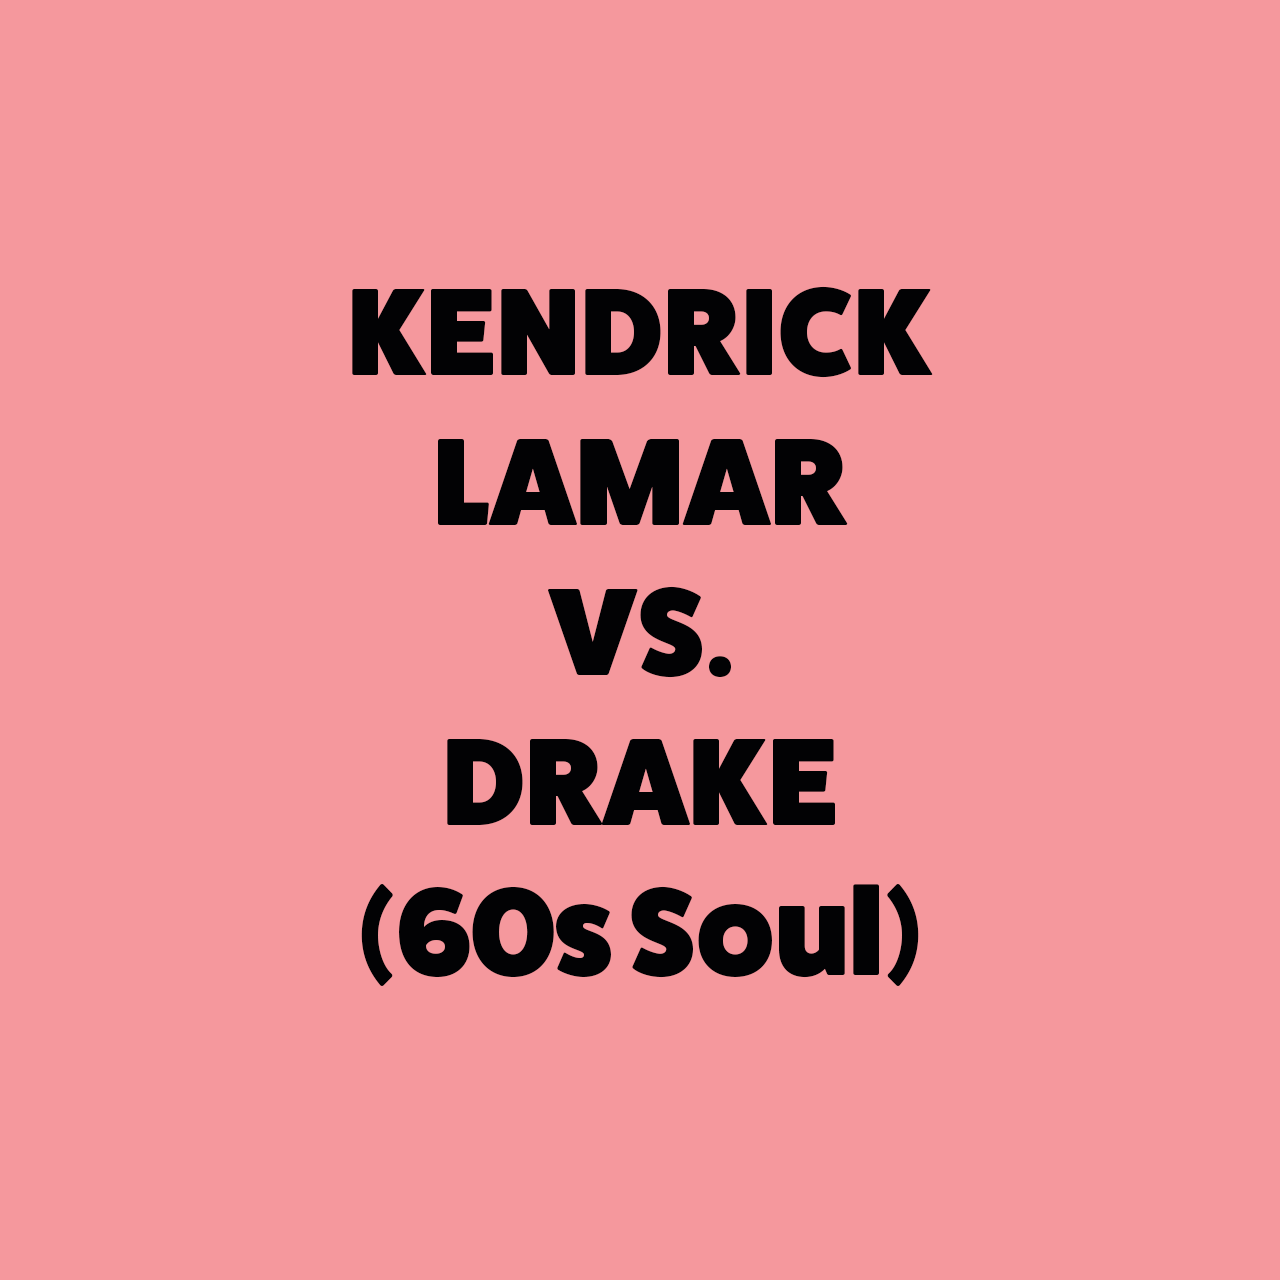 Kendrick vs. Drake